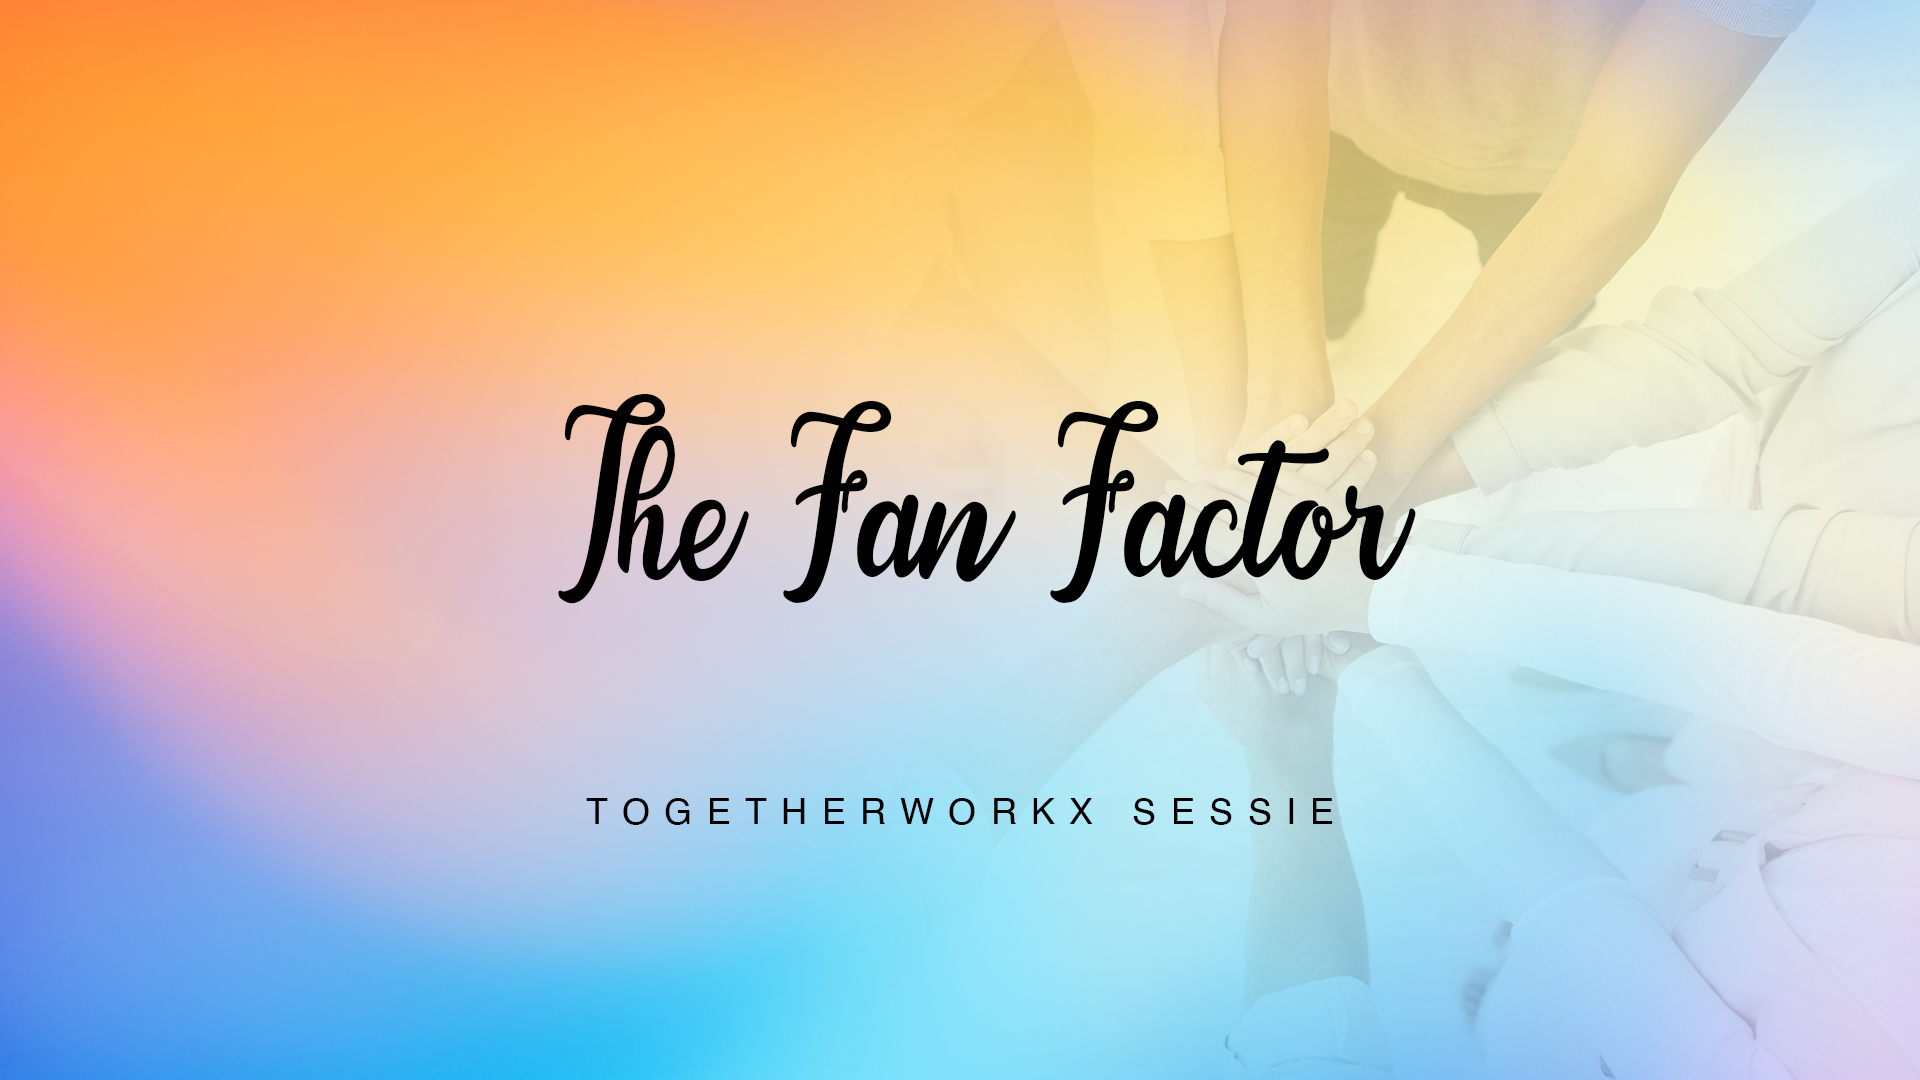 The Fan Factor